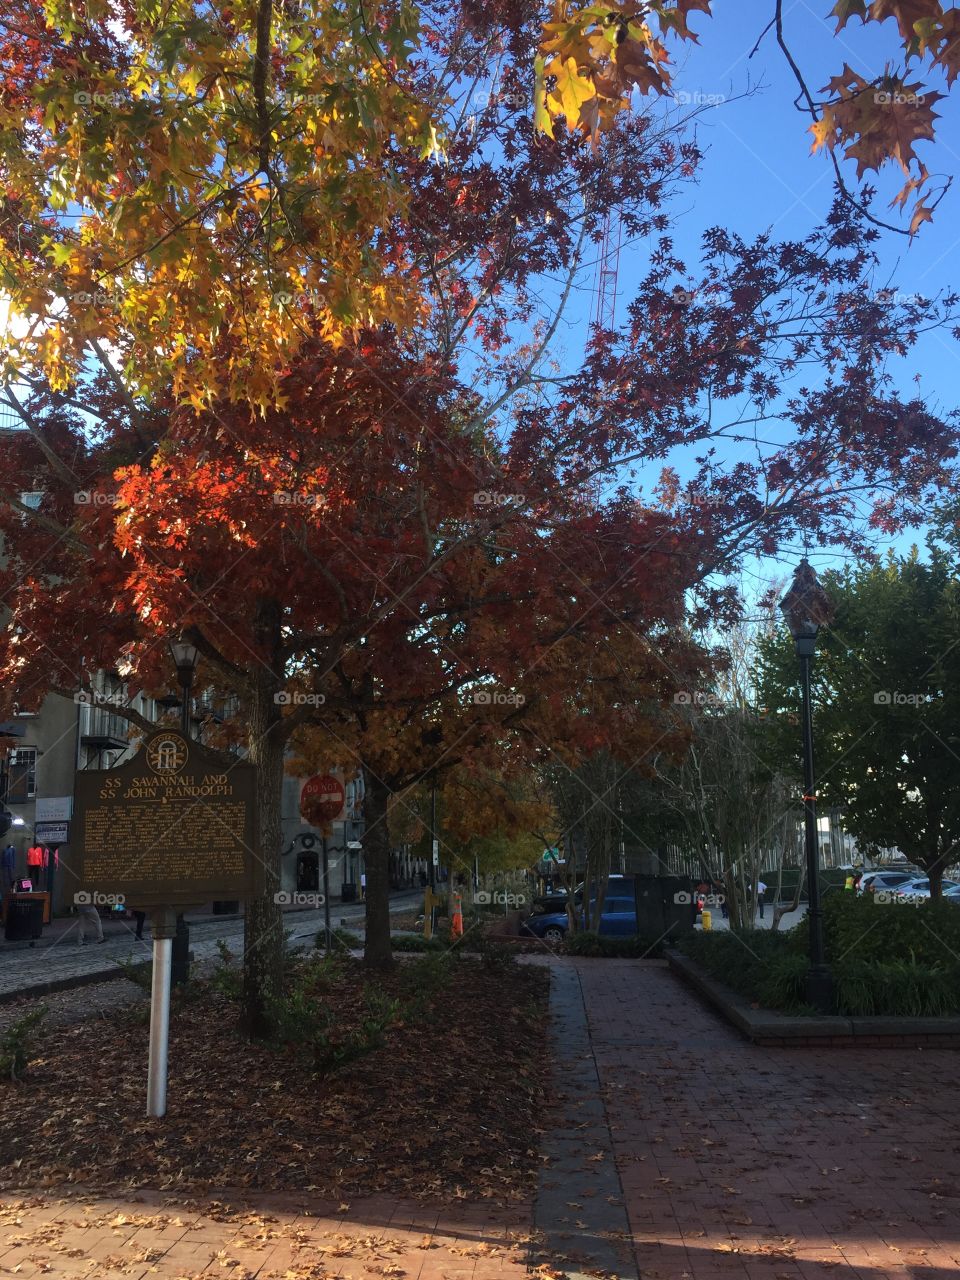 Downtown Savannah in fall